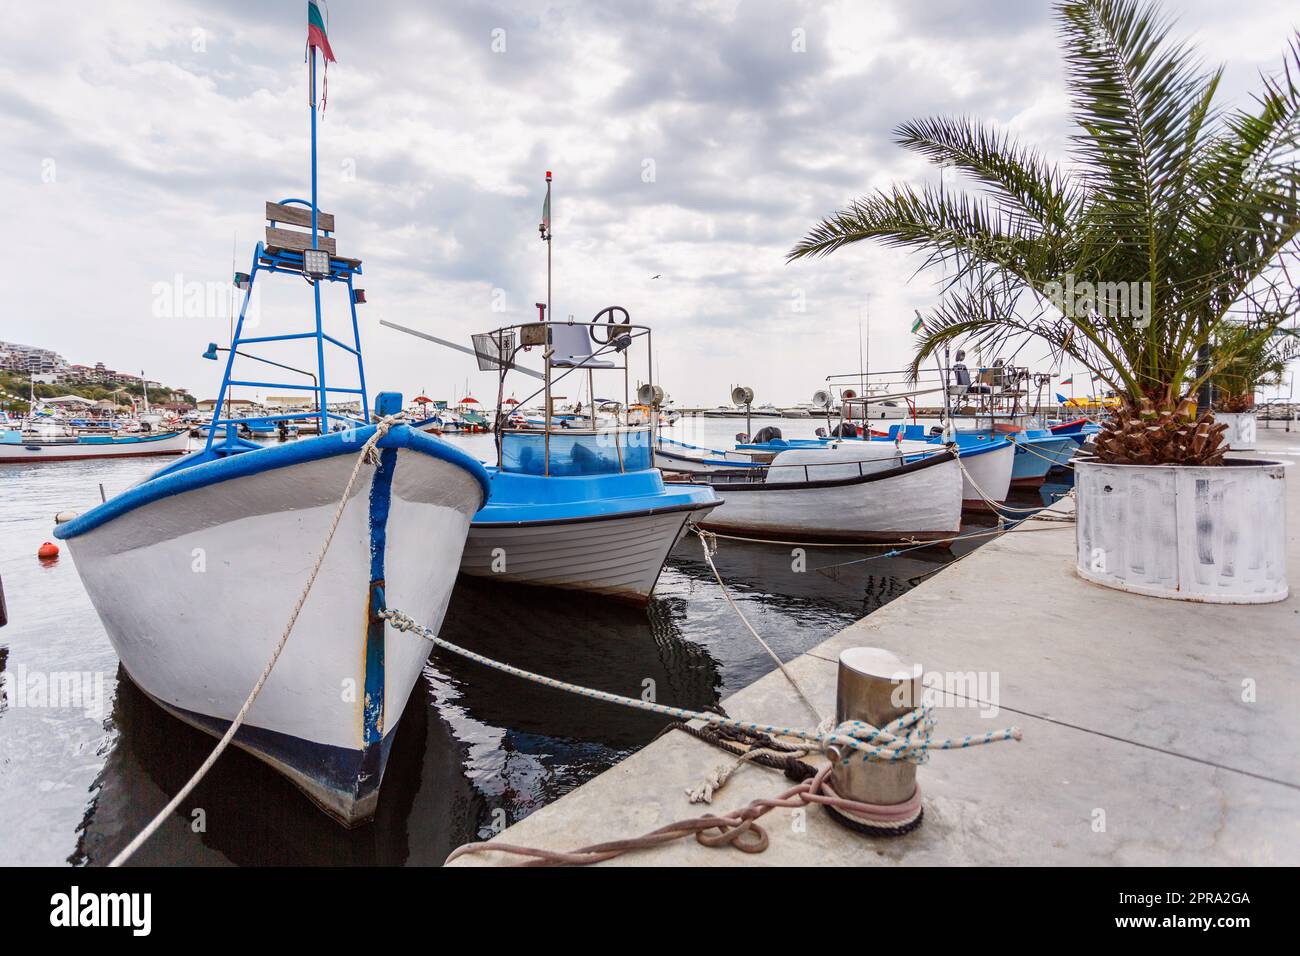 Paysage d'été. Des bateaux de pêche sont amarrés à la jetée près des palmiers. Concept de promenades en mer et de détente. Banque D'Images